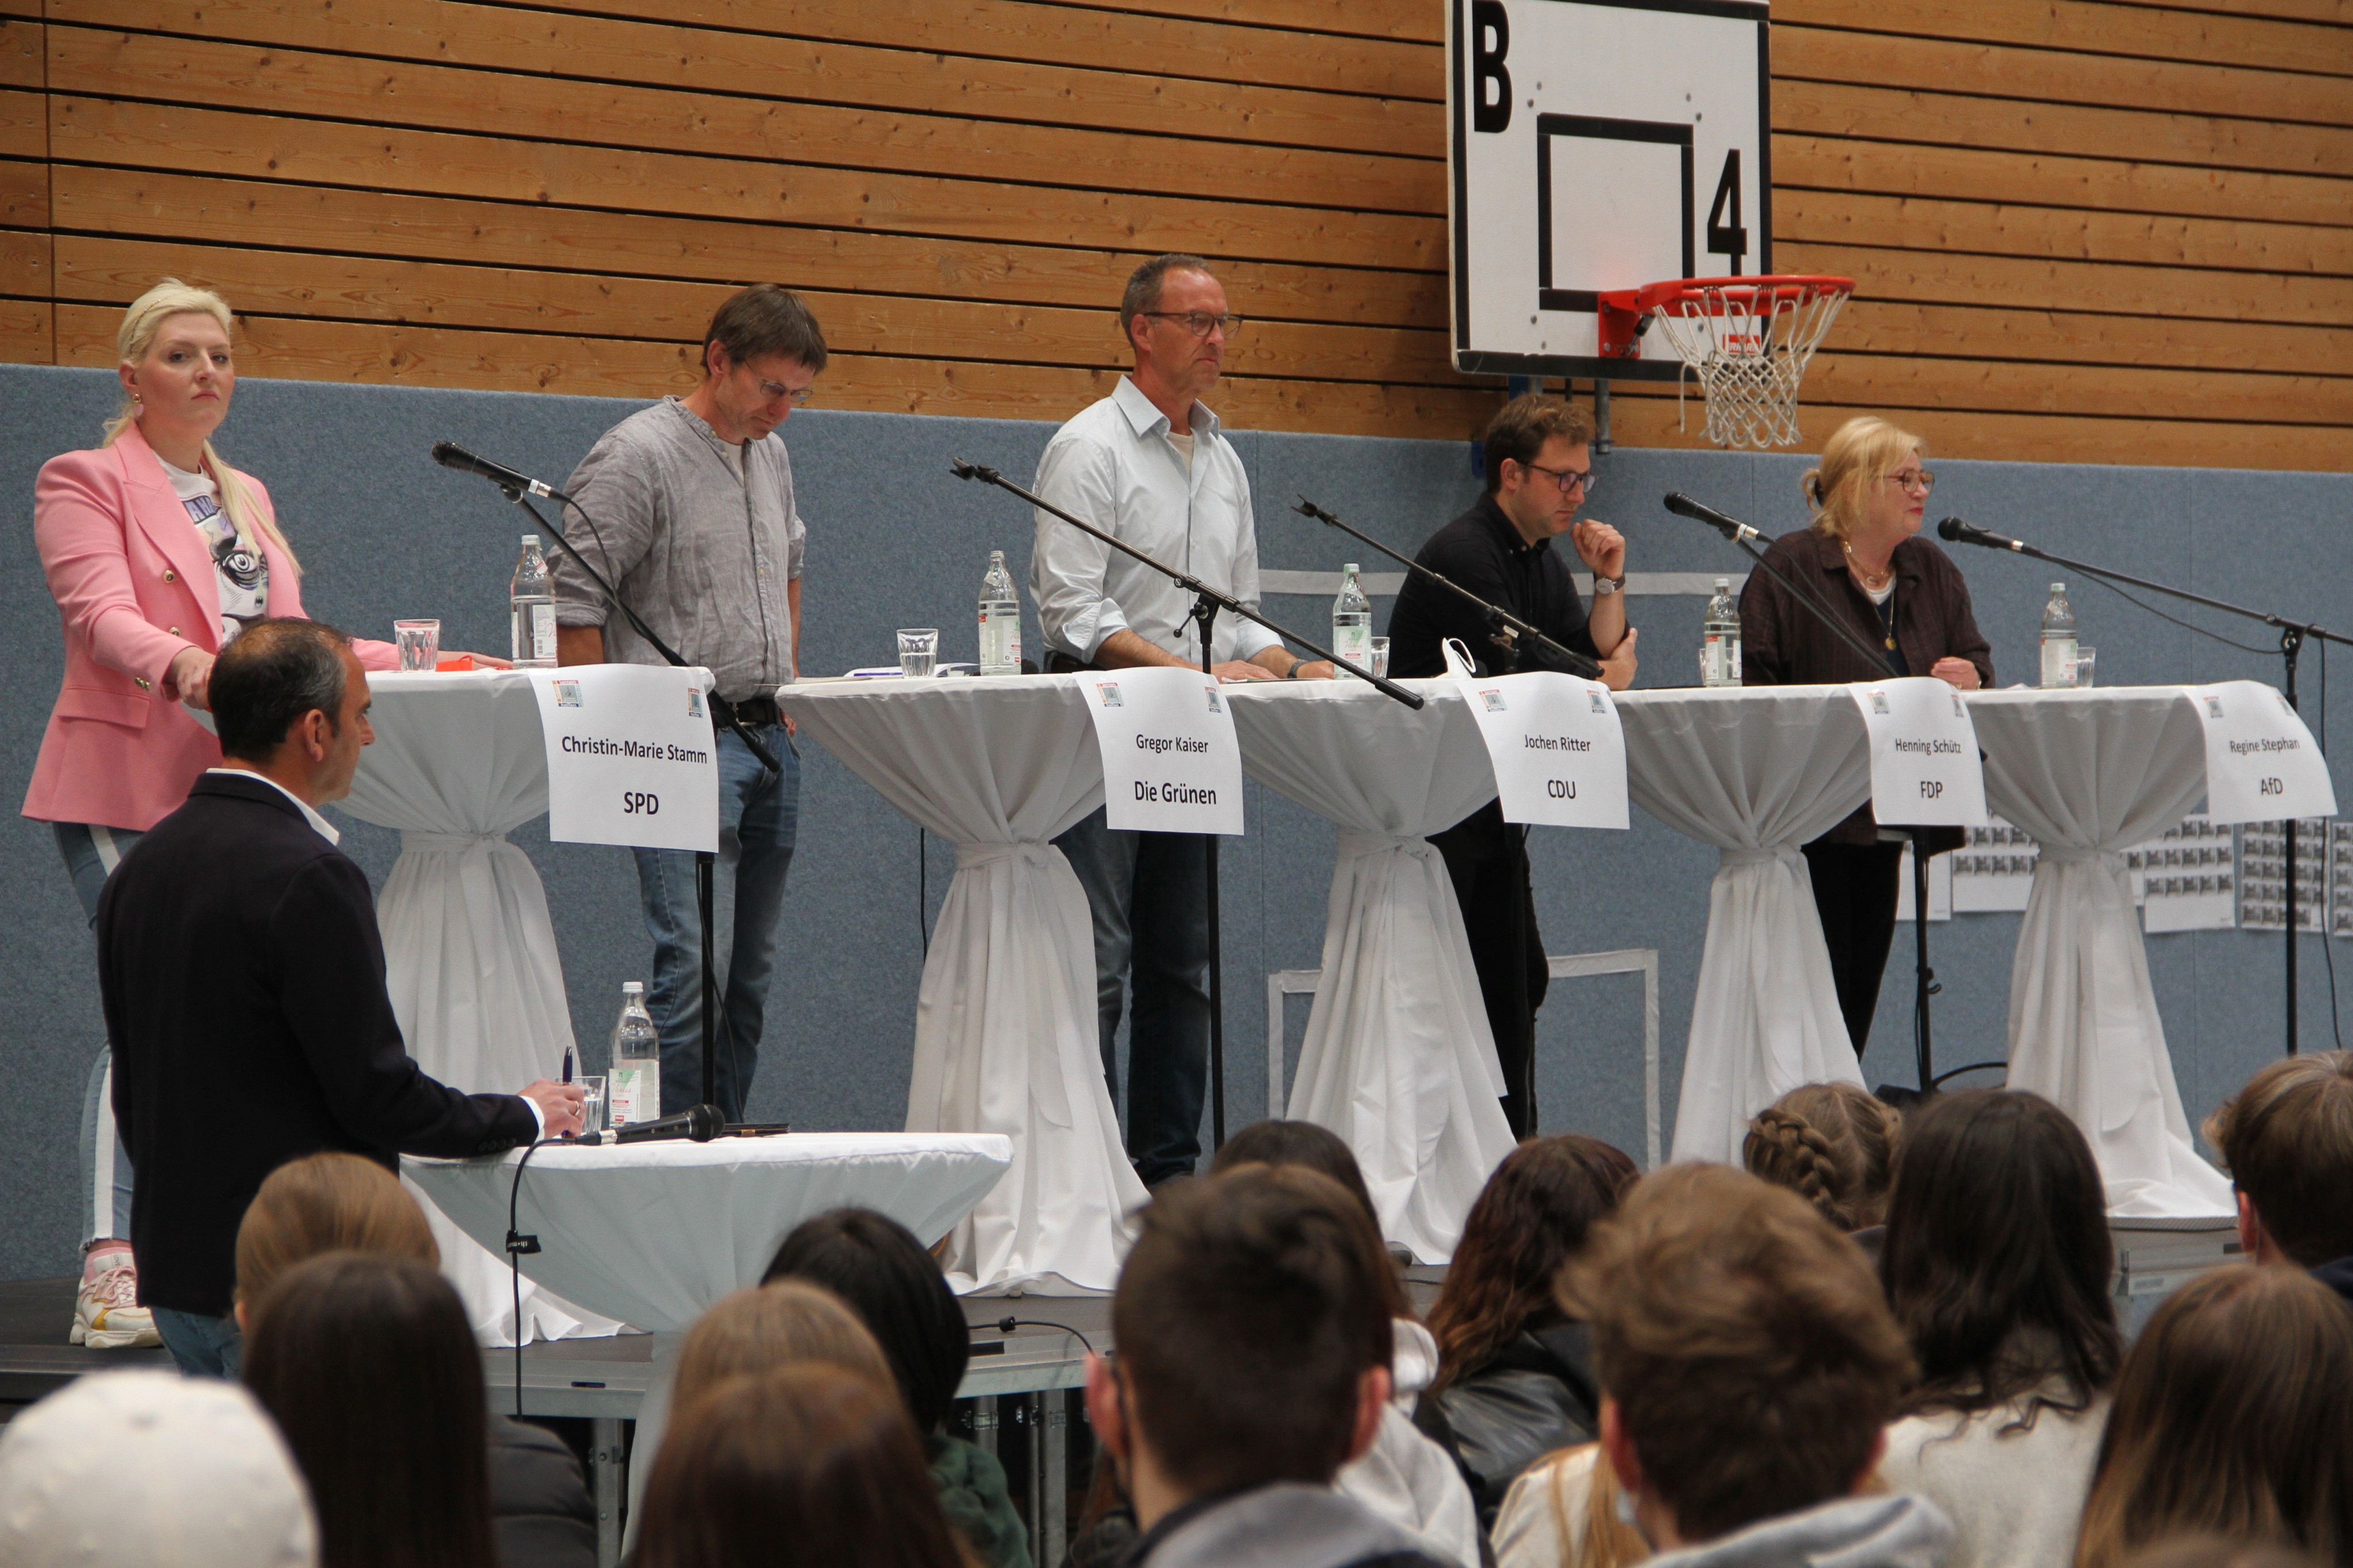 Stellten sich auf der Bühne den Fragen der Schüler: (v.l.) Christin-Marie Stamm (SPD), Dr. Gregor Kaiser (Grüne), Jochen Ritter (CDU), Henning Schütz (FDP) und Regine Stephan (AfD). von Kerstin Sauer